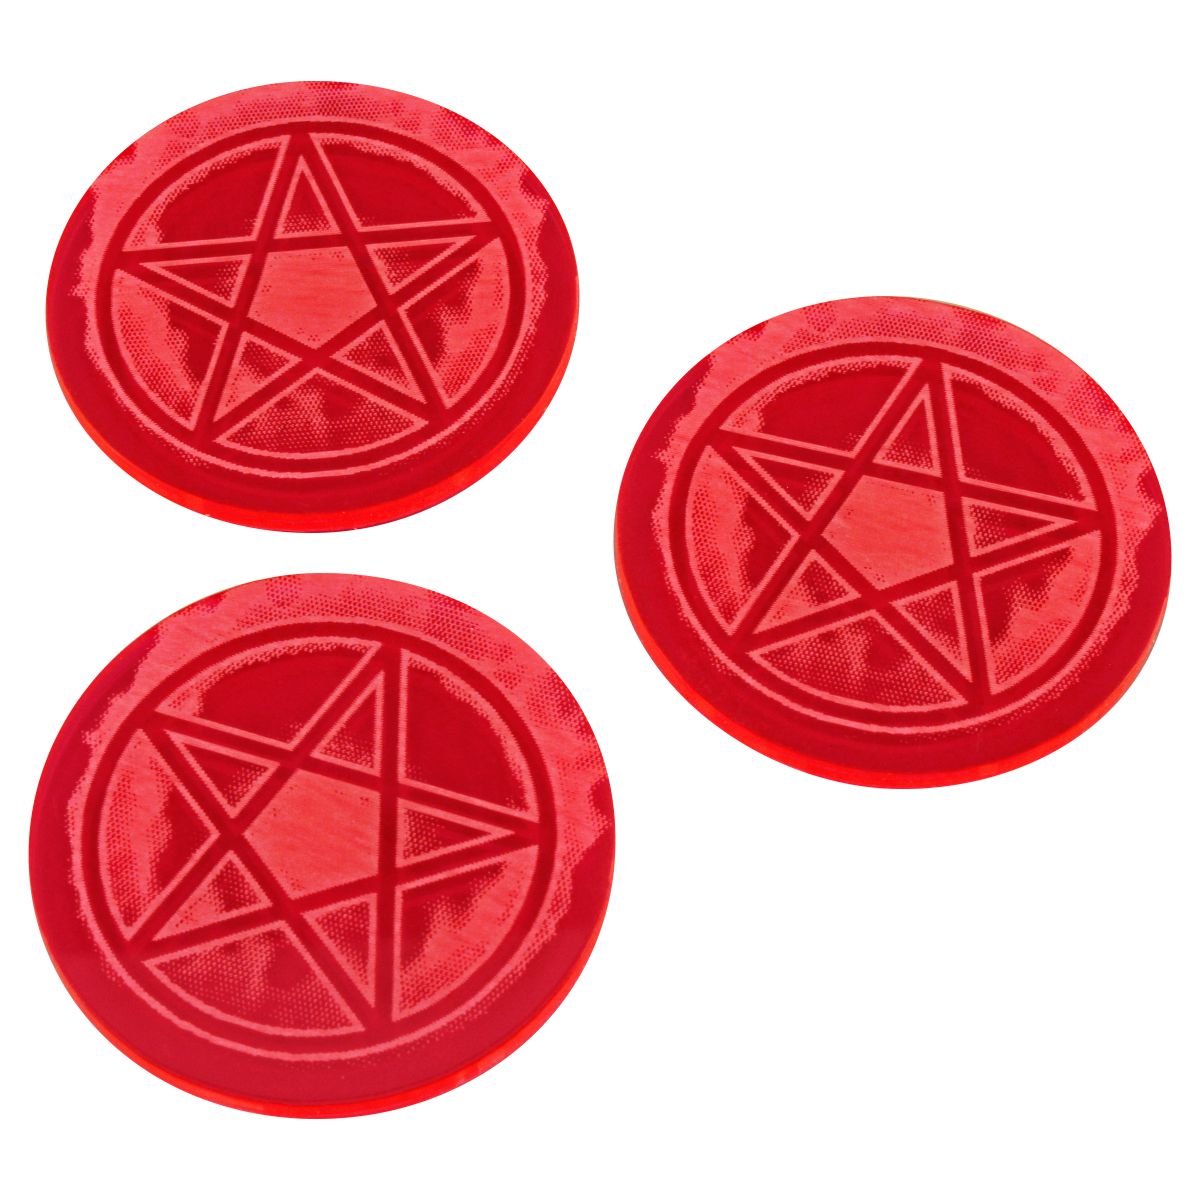 Litko: Cthulhu Pentagram Sealed Gate Tokens- Fluorescent Pink (3) 